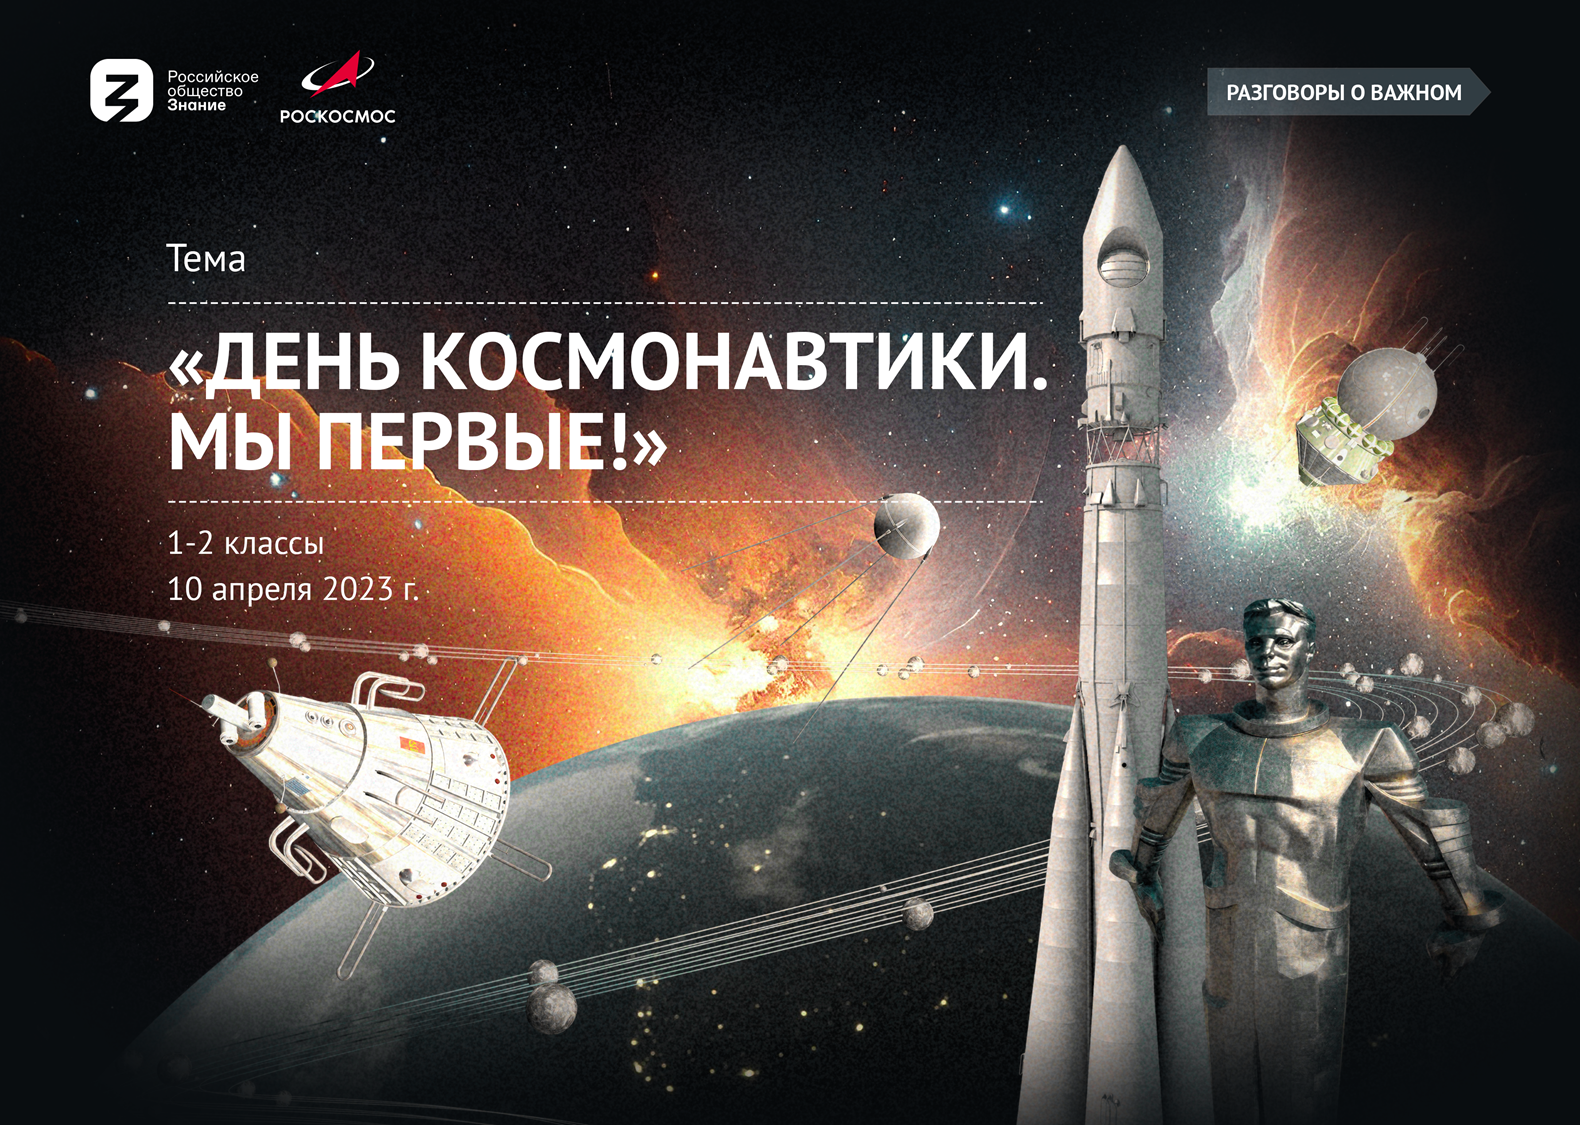 Разговоры о важном день космонавтики мы первые. Космонавтика 12 апреля. Россия 1 день космонавтики. День космонавтики 2023. Разговоры о важном 12 апреля.